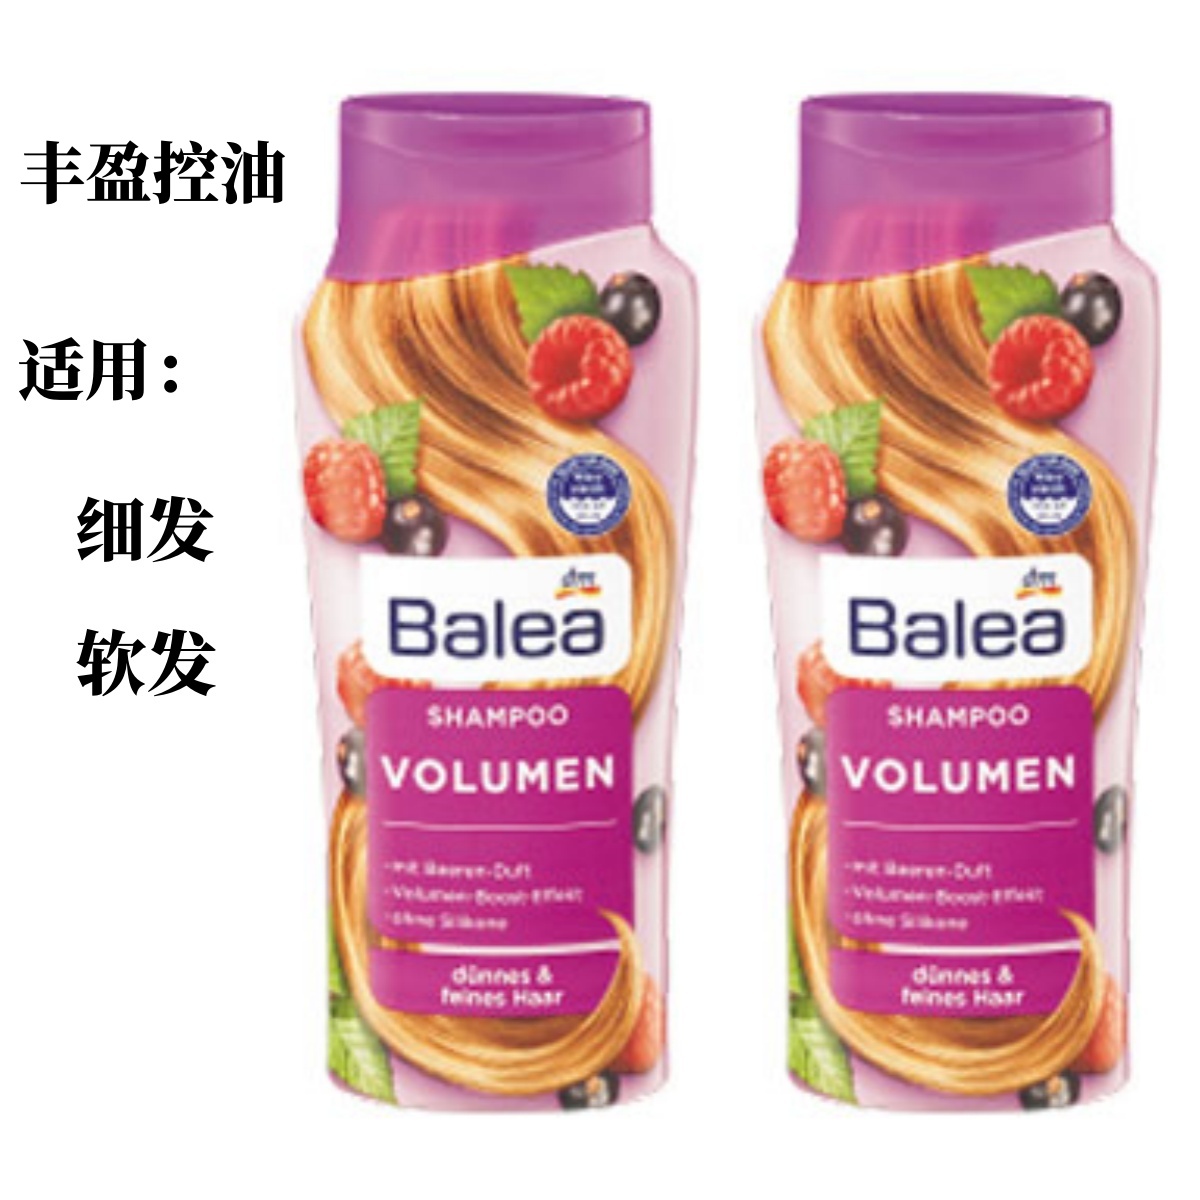 德国原装进口芭乐雅（Balea）浆果树莓清爽控油洗发水300ml两瓶起售